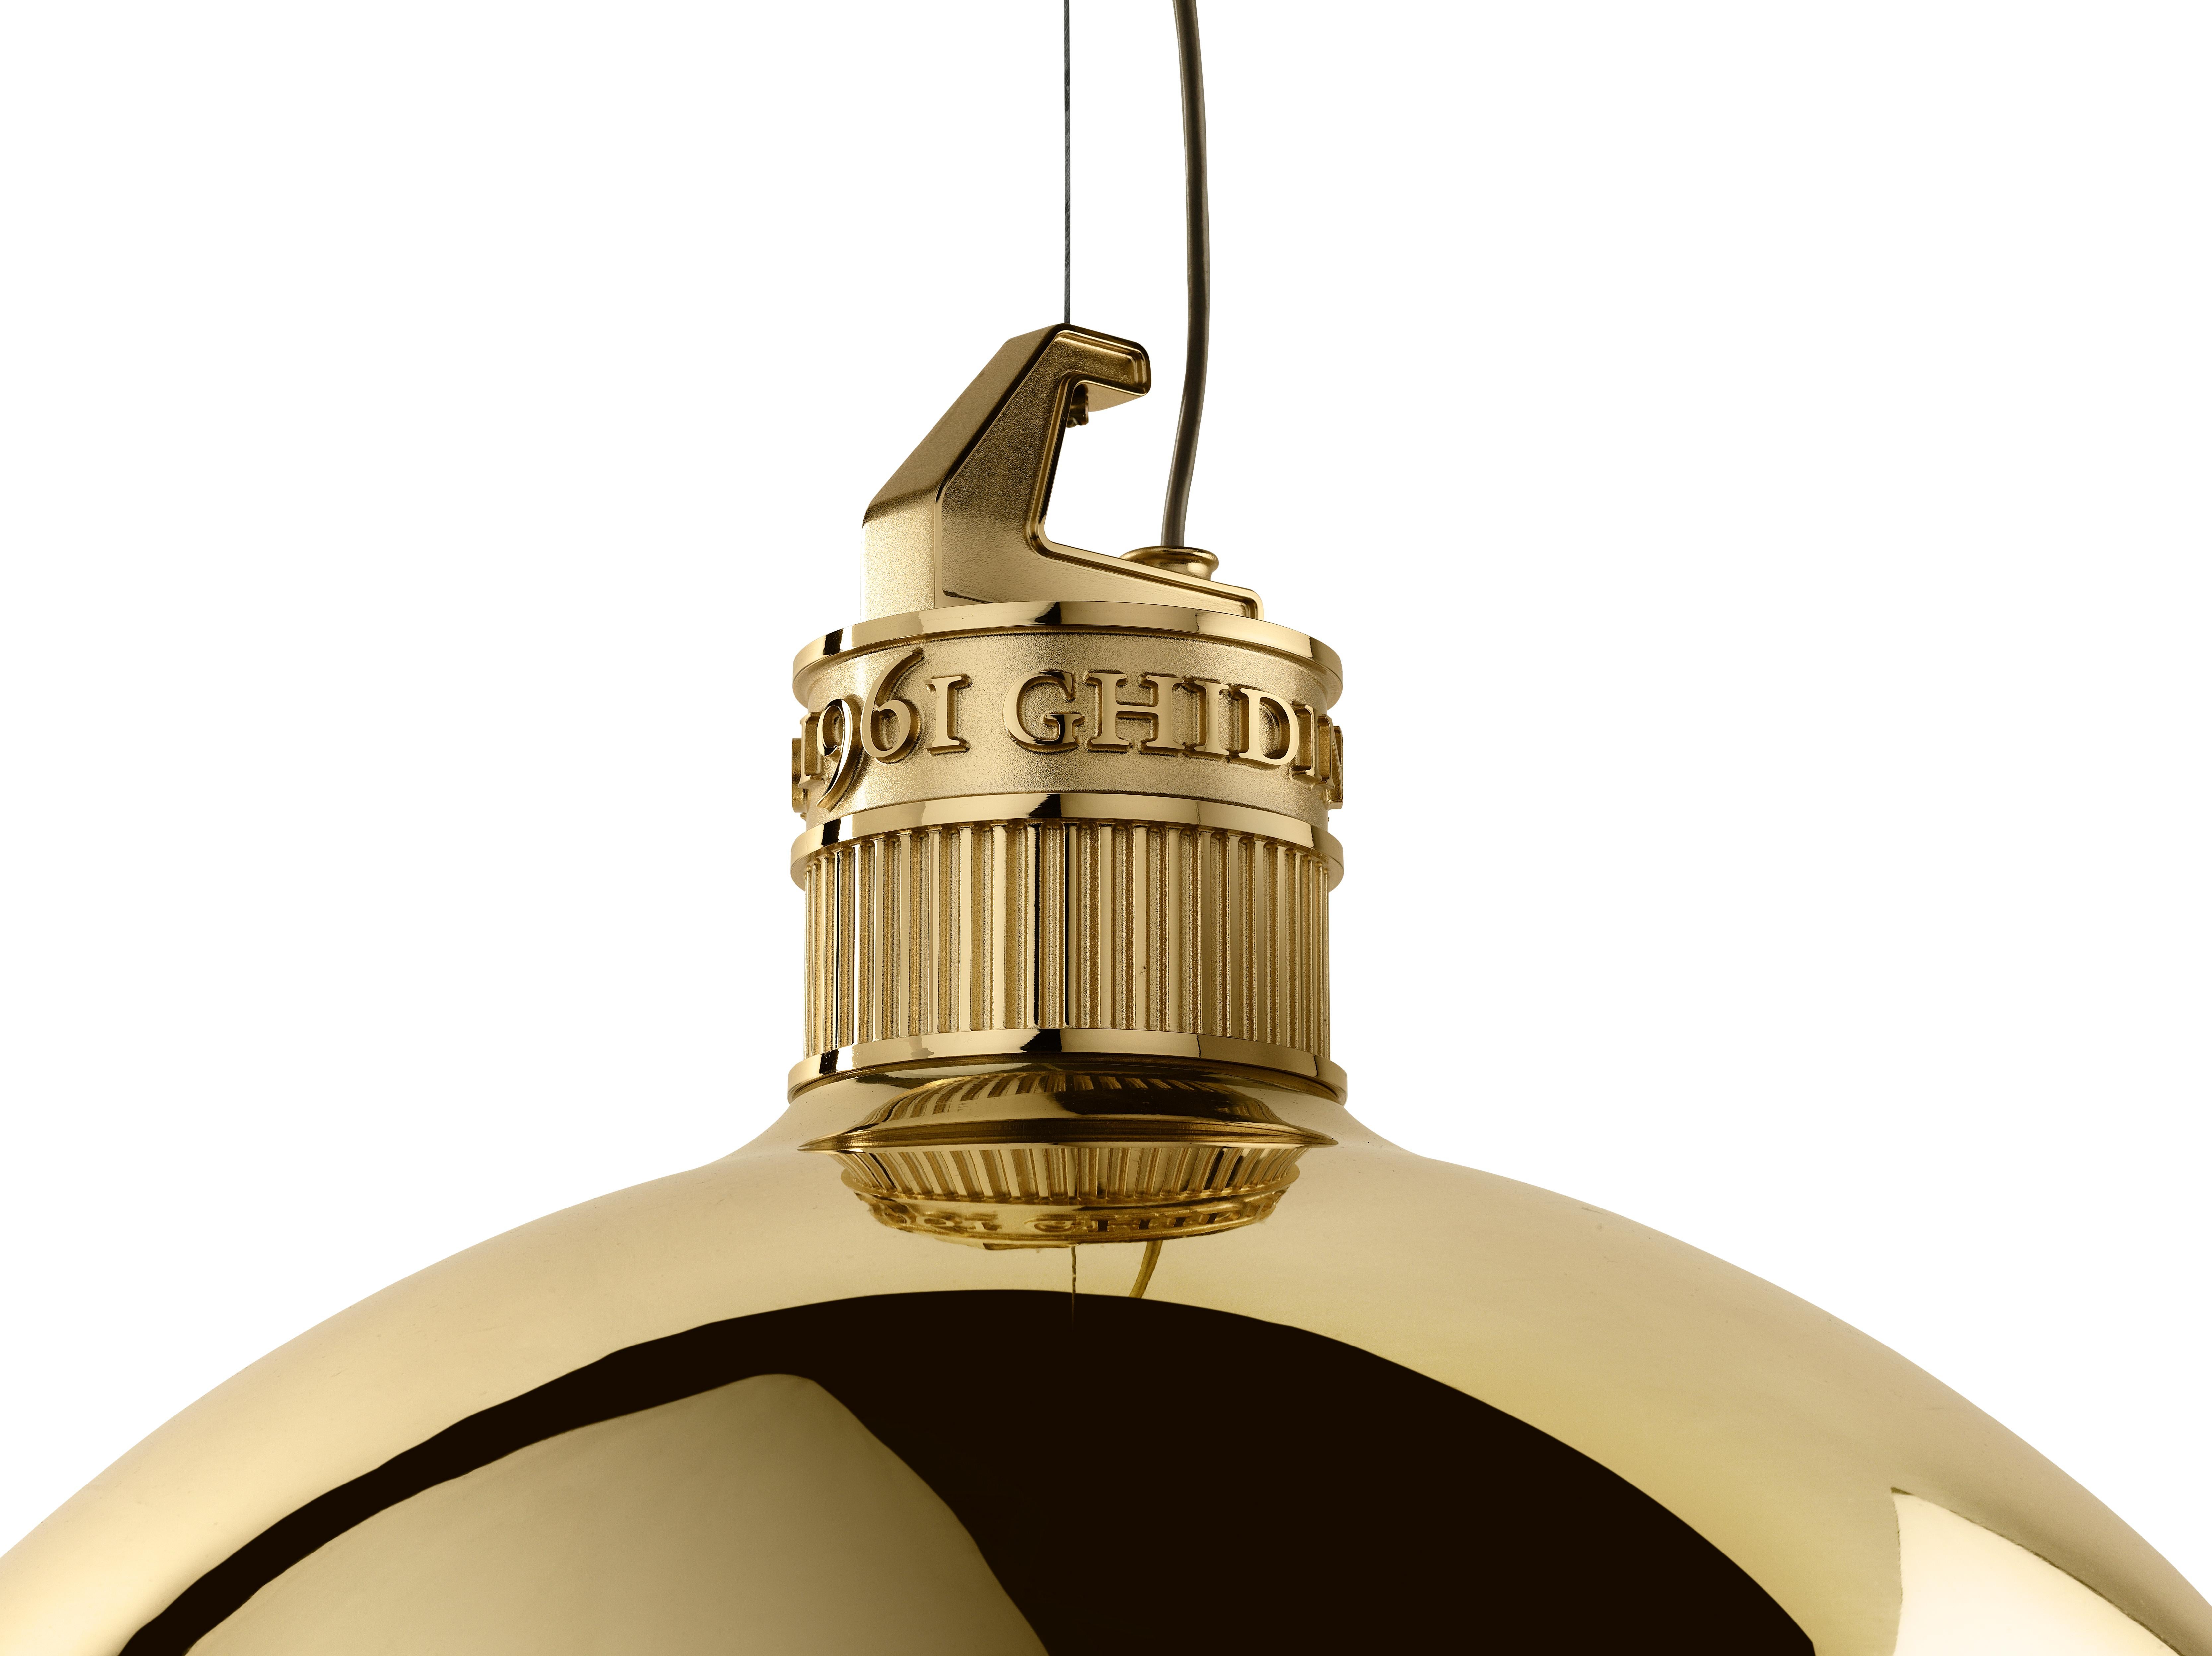 Die Glocke Metall-Lampe in Industriehallen verwendet wird, ist ein No-Name-Ikone der Metall-Aufhängung, in einem Gleichgewicht zwischen technischen und funktionalen Bild und Erinnerung, findet leicht seinen Platz in der zeitgenössischen